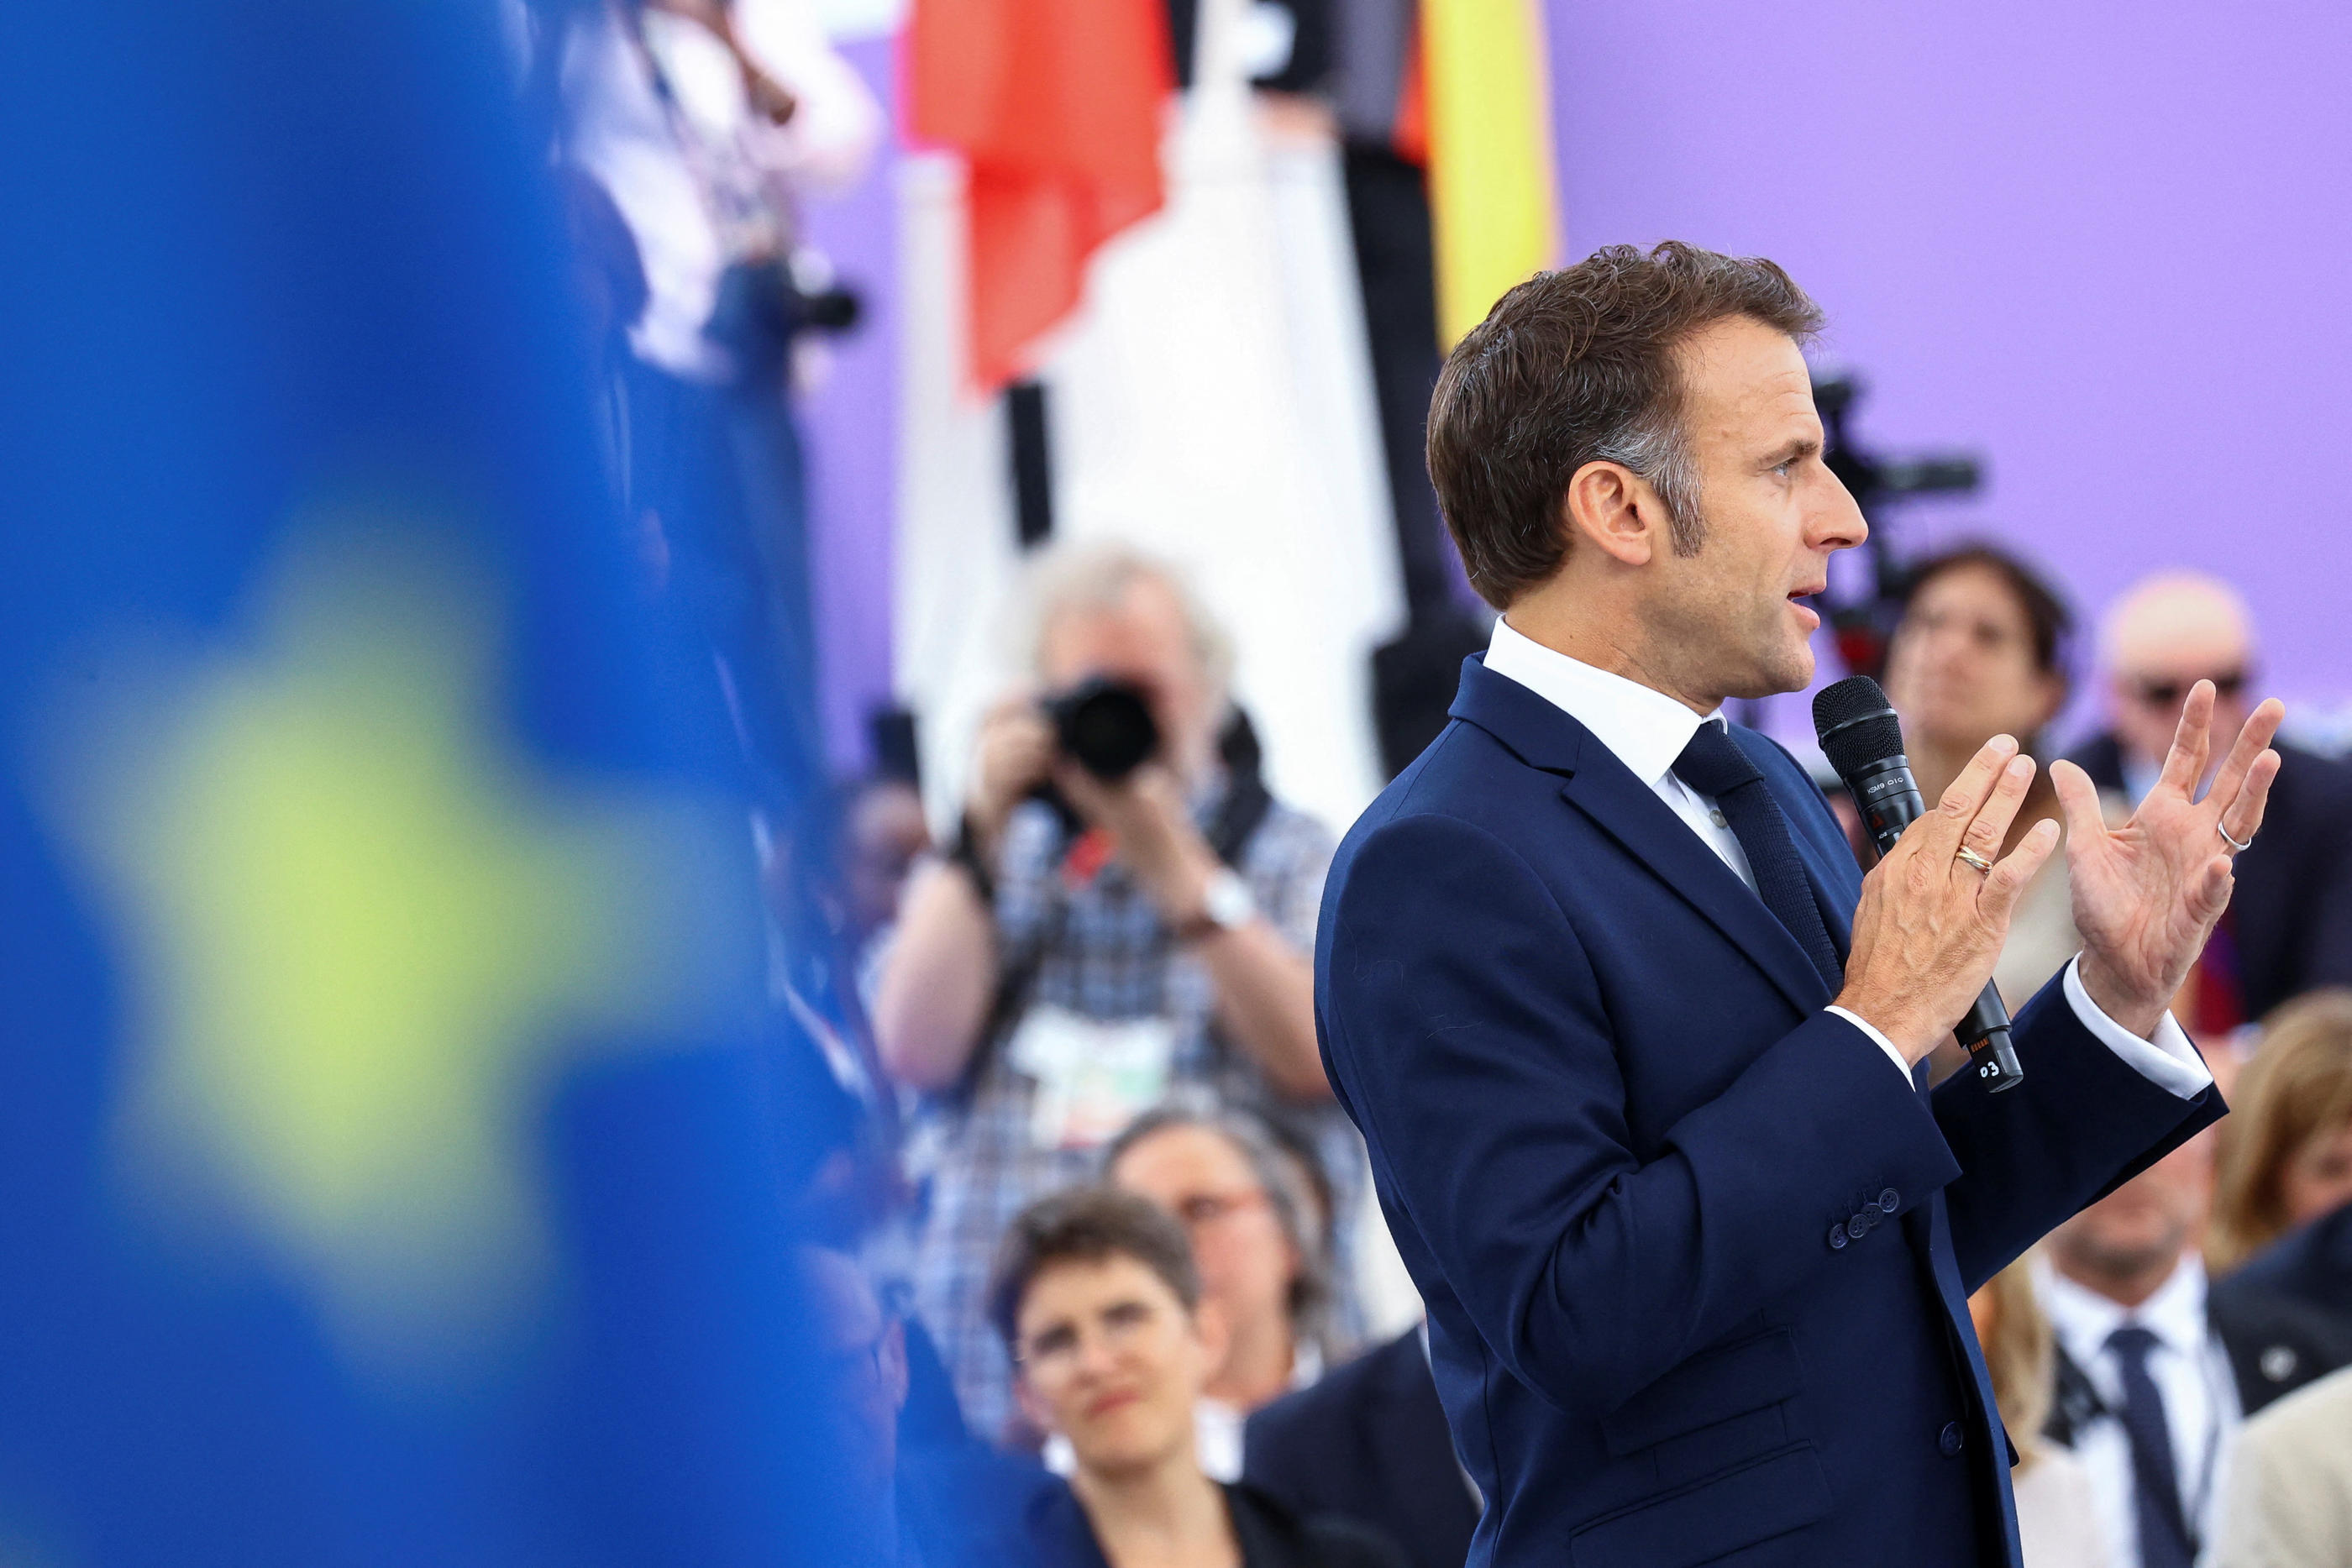 « La force des démocraties, c’est le débat permanent sur toutes les questions pour essayer d’aboutir à la meilleure décision que le peuple choisira », a défendu Emmanuel Macron à Berlin. Reuters/Christian Mang